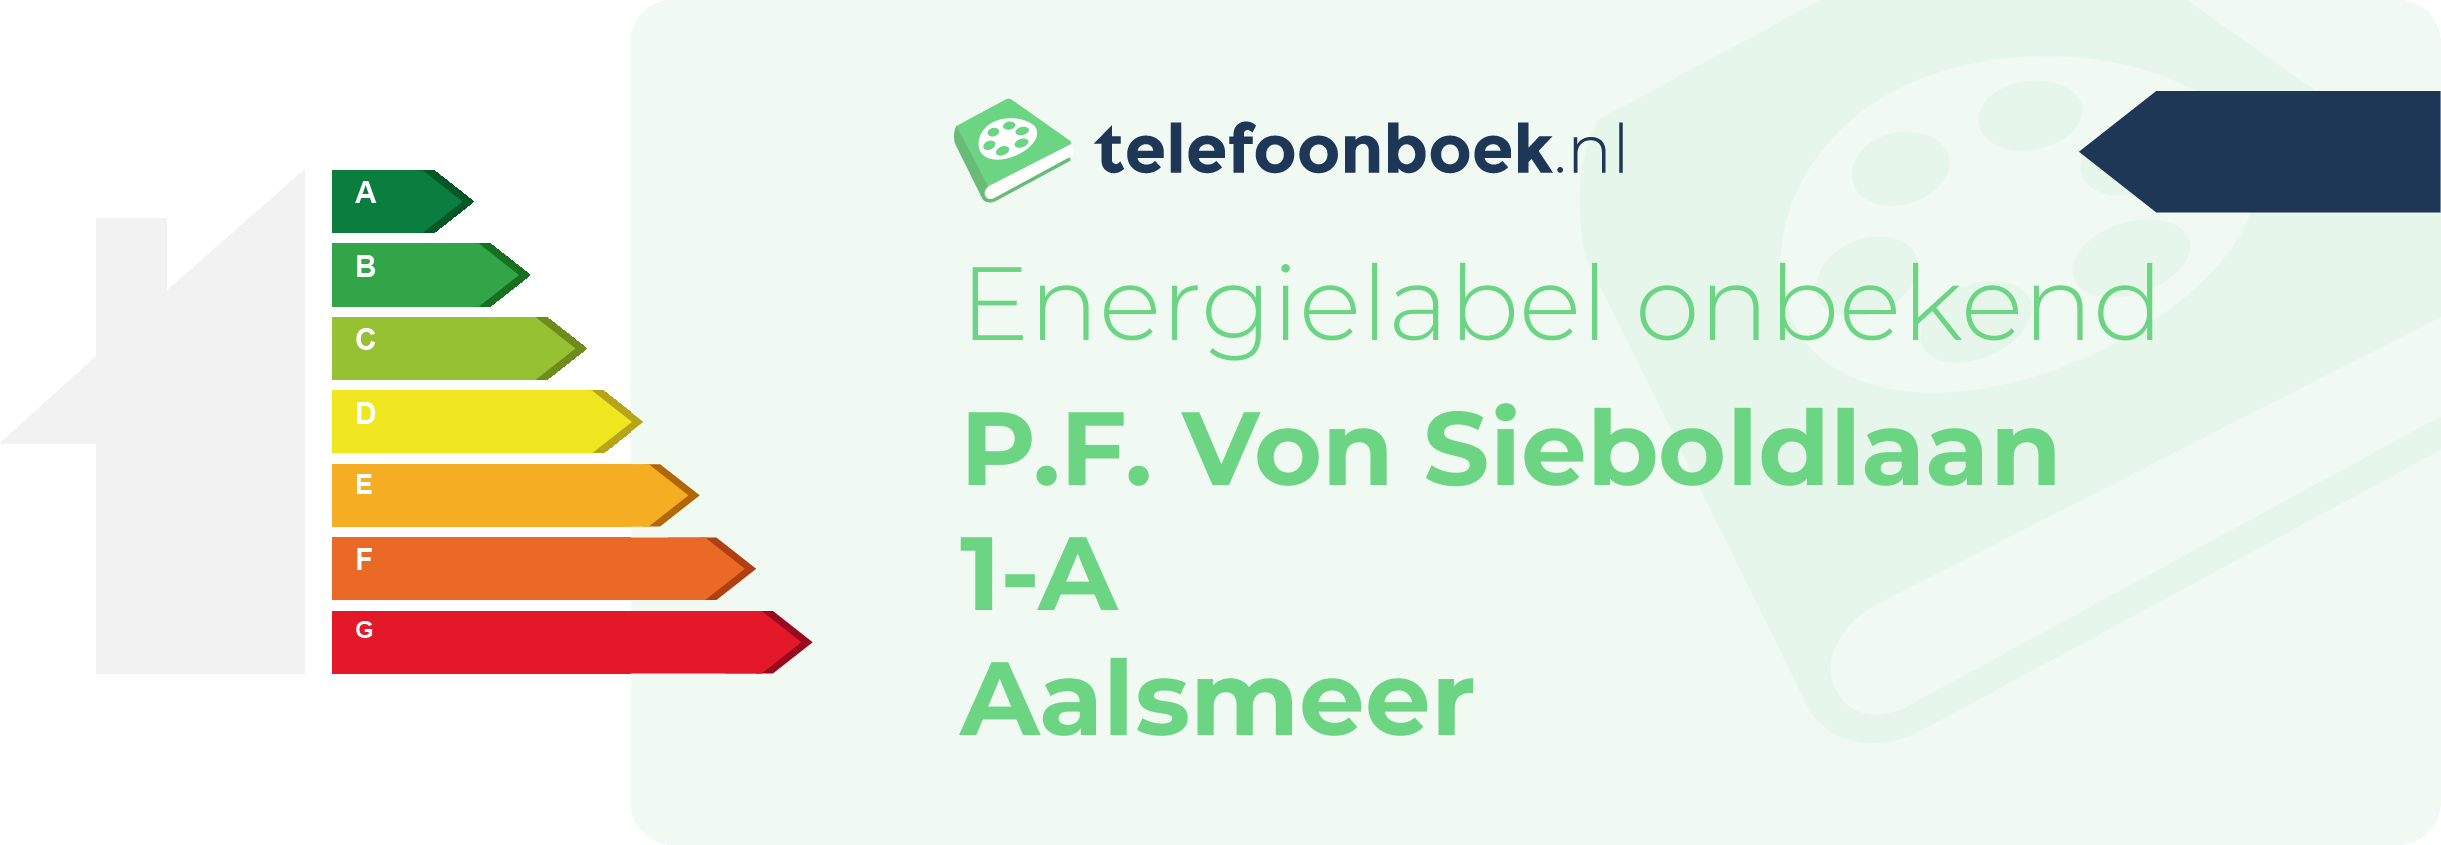 Energielabel P.F. Von Sieboldlaan 1-A Aalsmeer